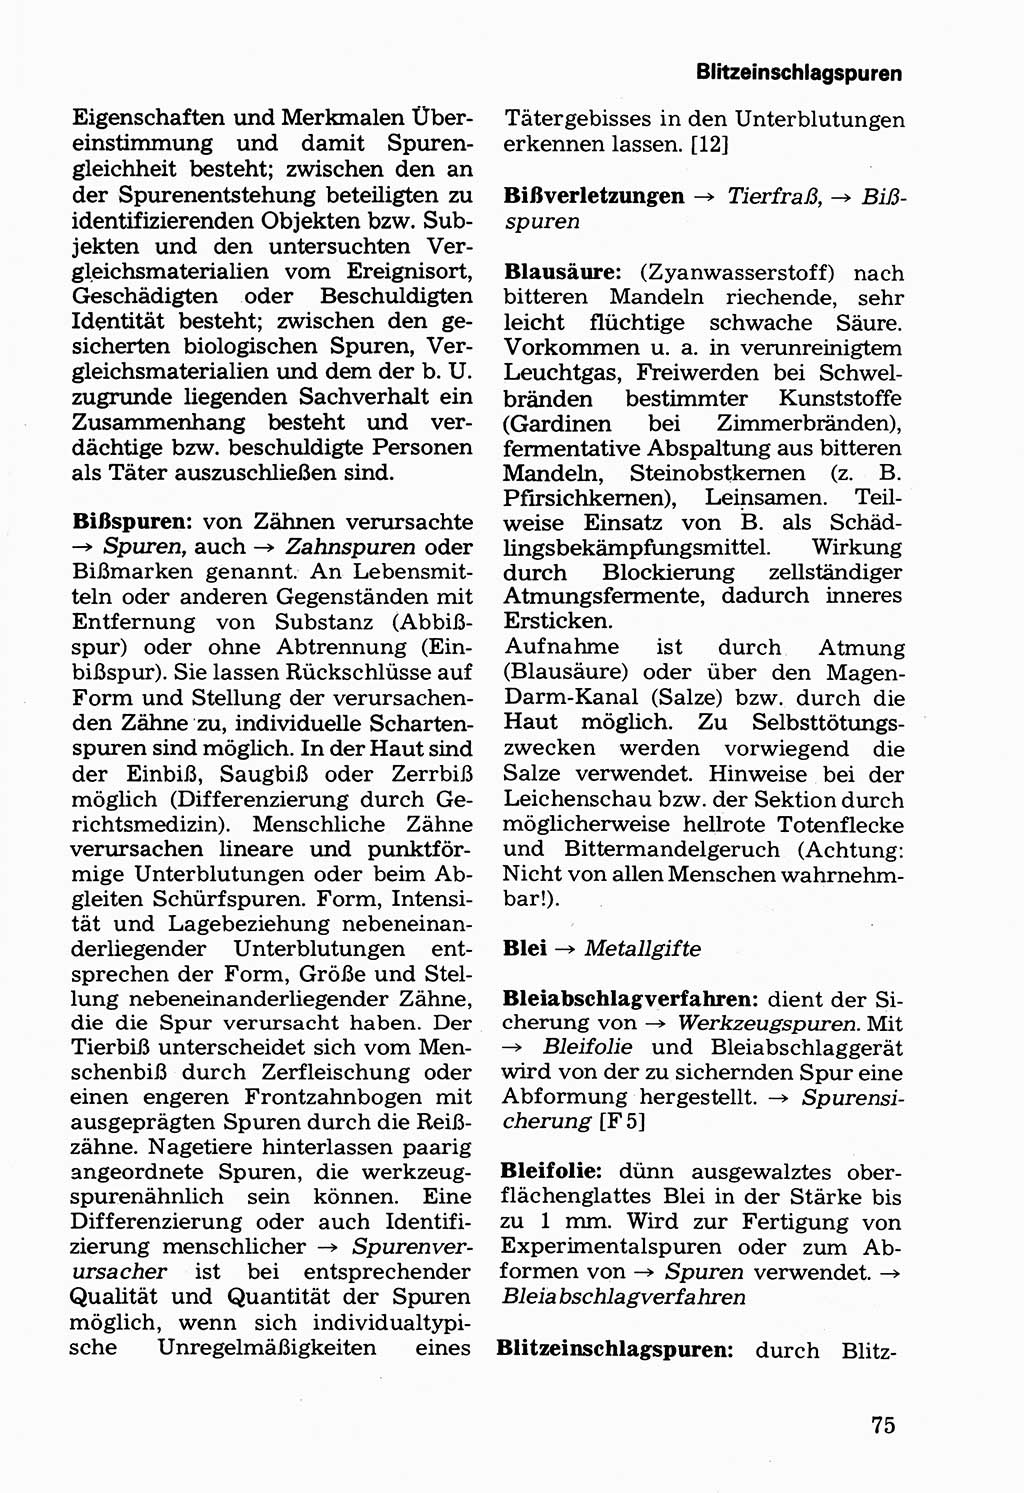 Wörterbuch der sozialistischen Kriminalistik [Deutsche Demokratische Republik (DDR)] 1981, Seite 75 (Wb. soz. Krim. DDR 1981, S. 75)